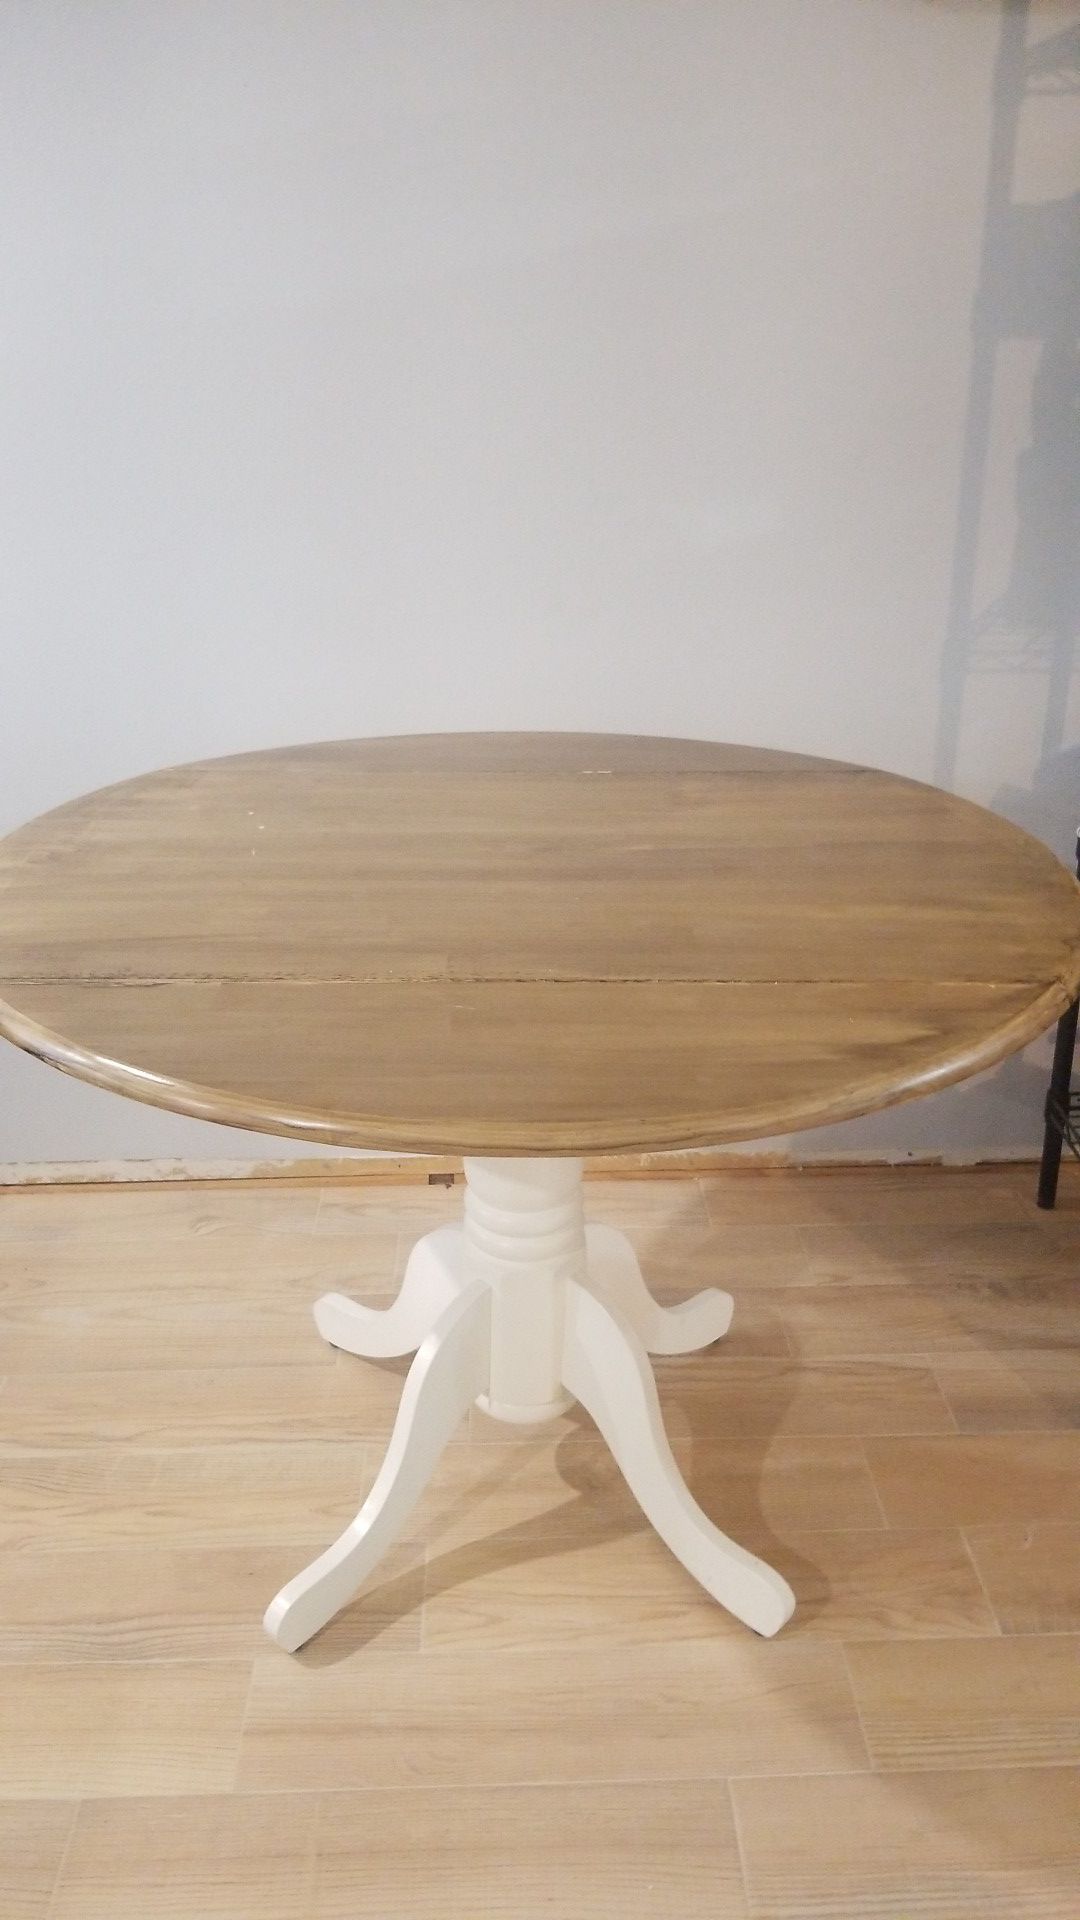 Breakfast Table - Midcentury Modern - Real Wood